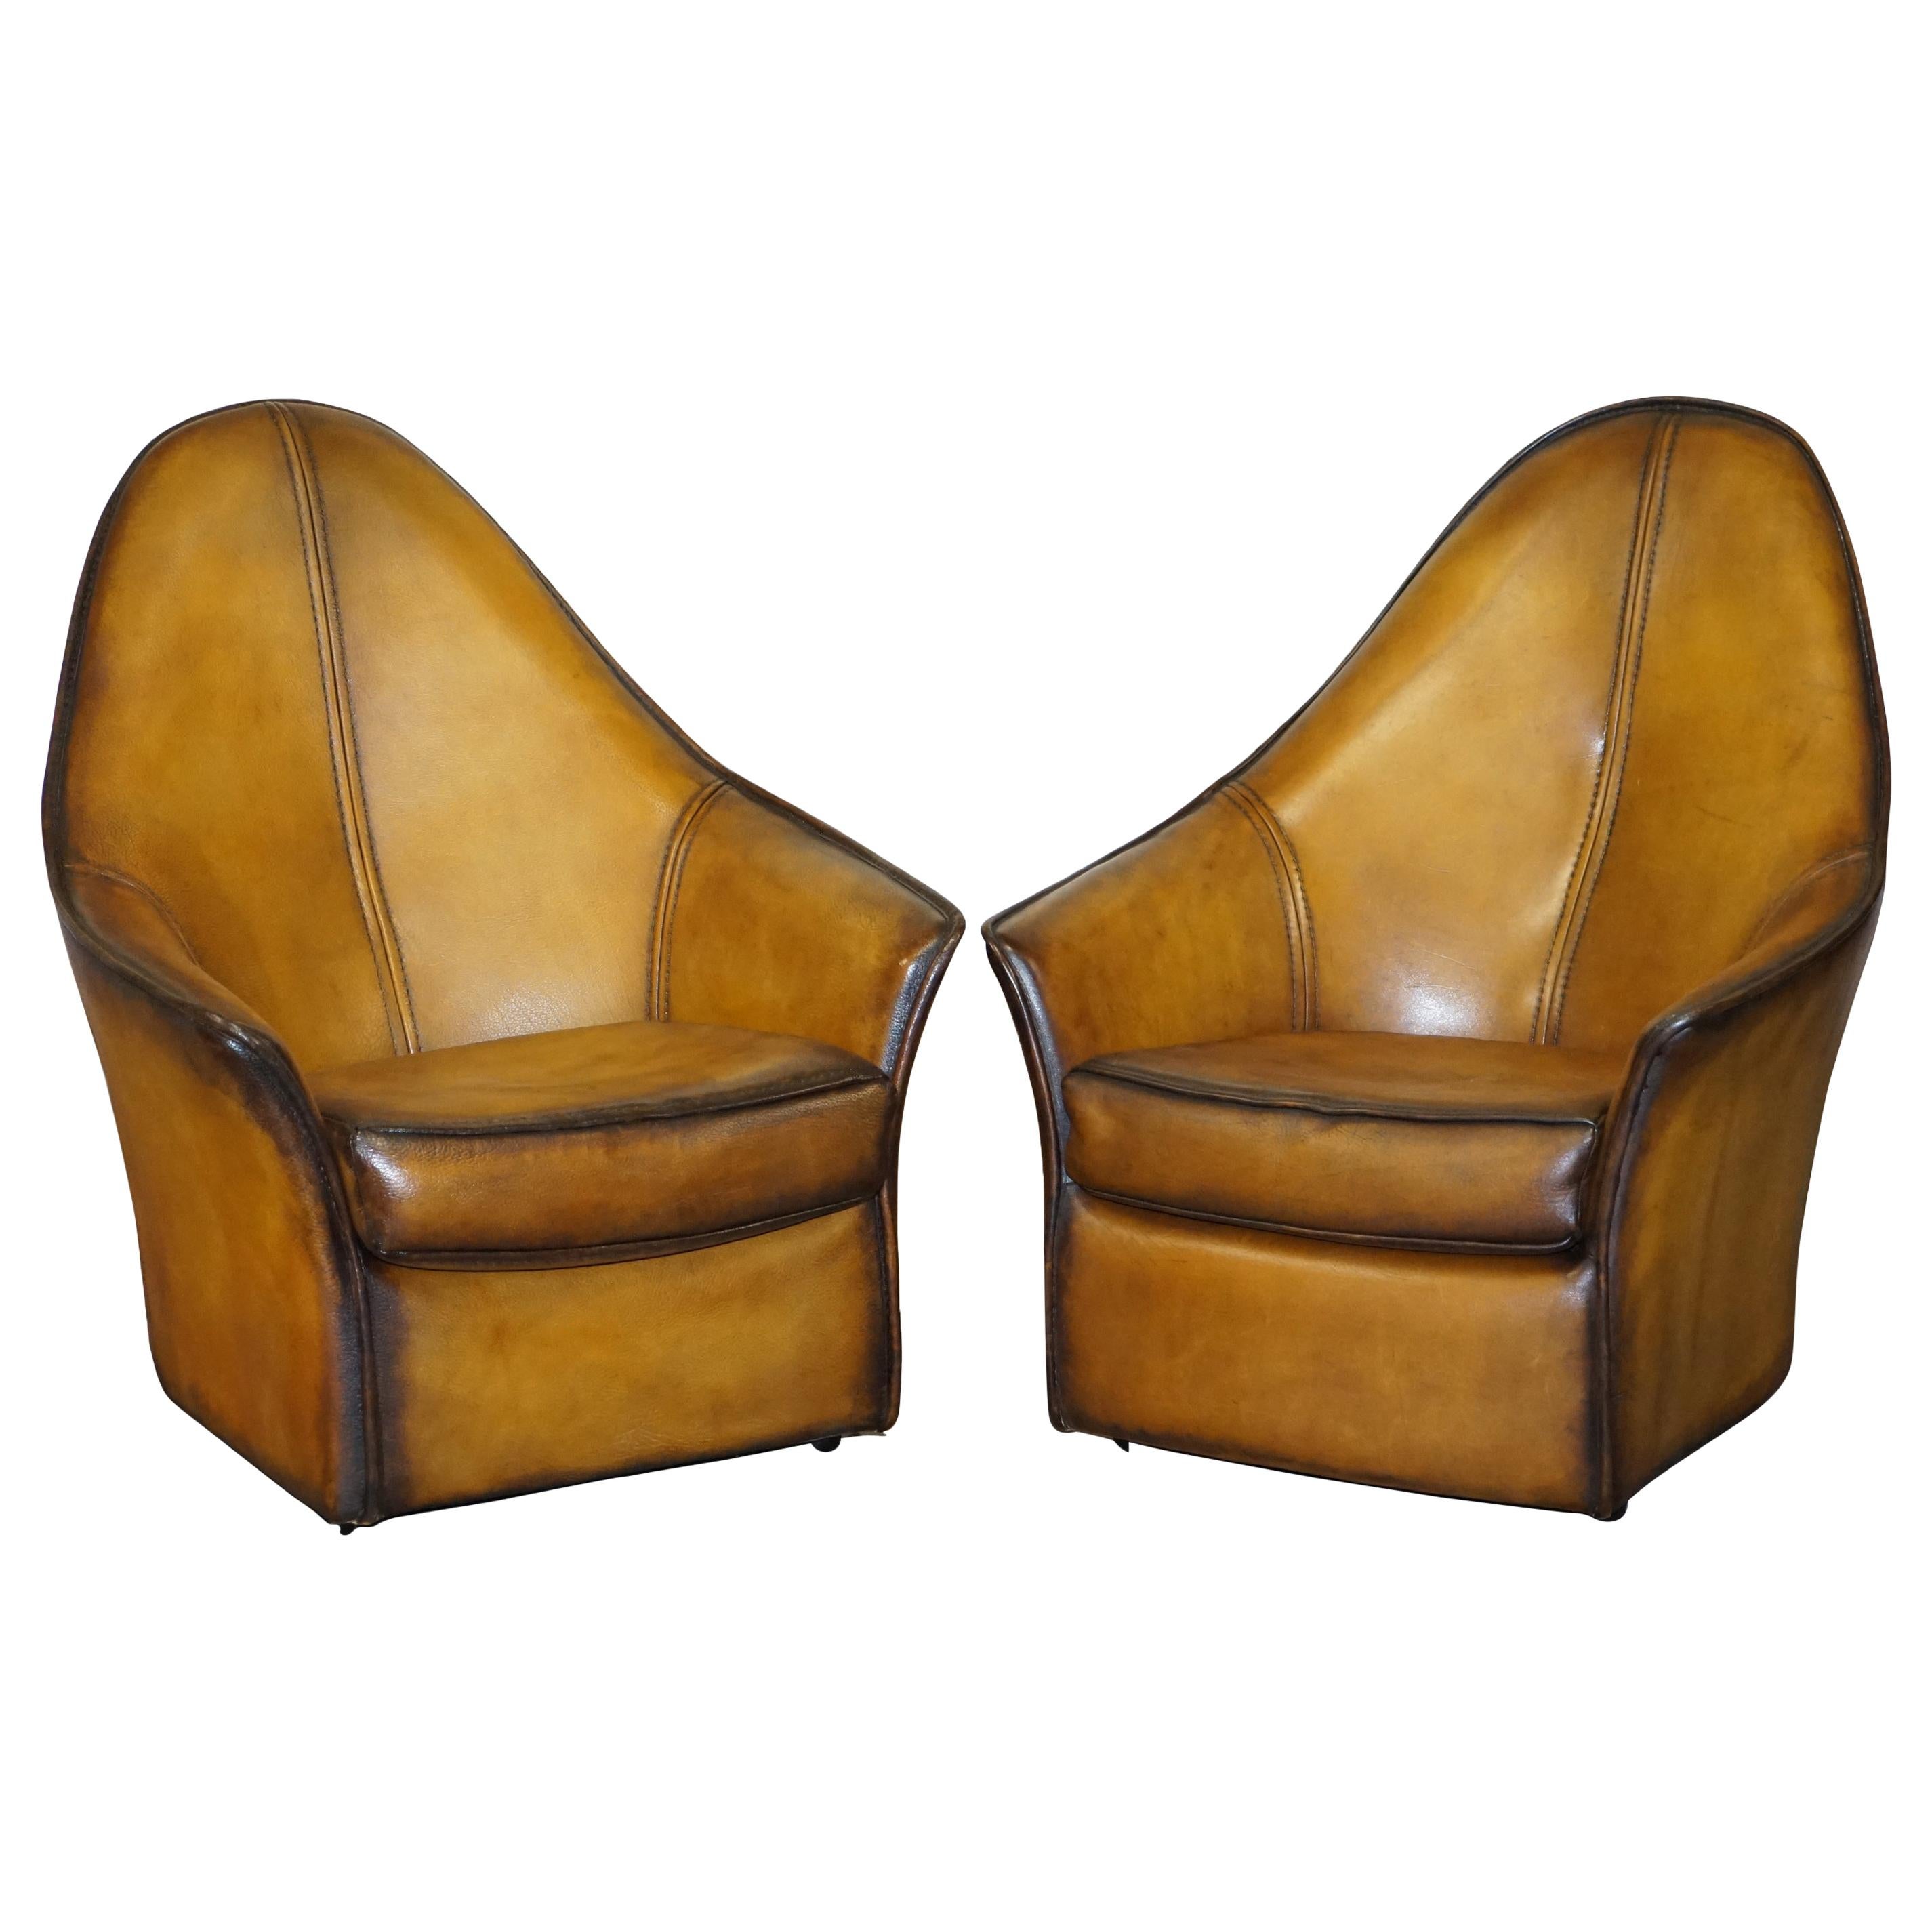 Paire de fauteuils modernes d'art à dossier incurvé en cuir marron restaurés, faisant partie de la suite